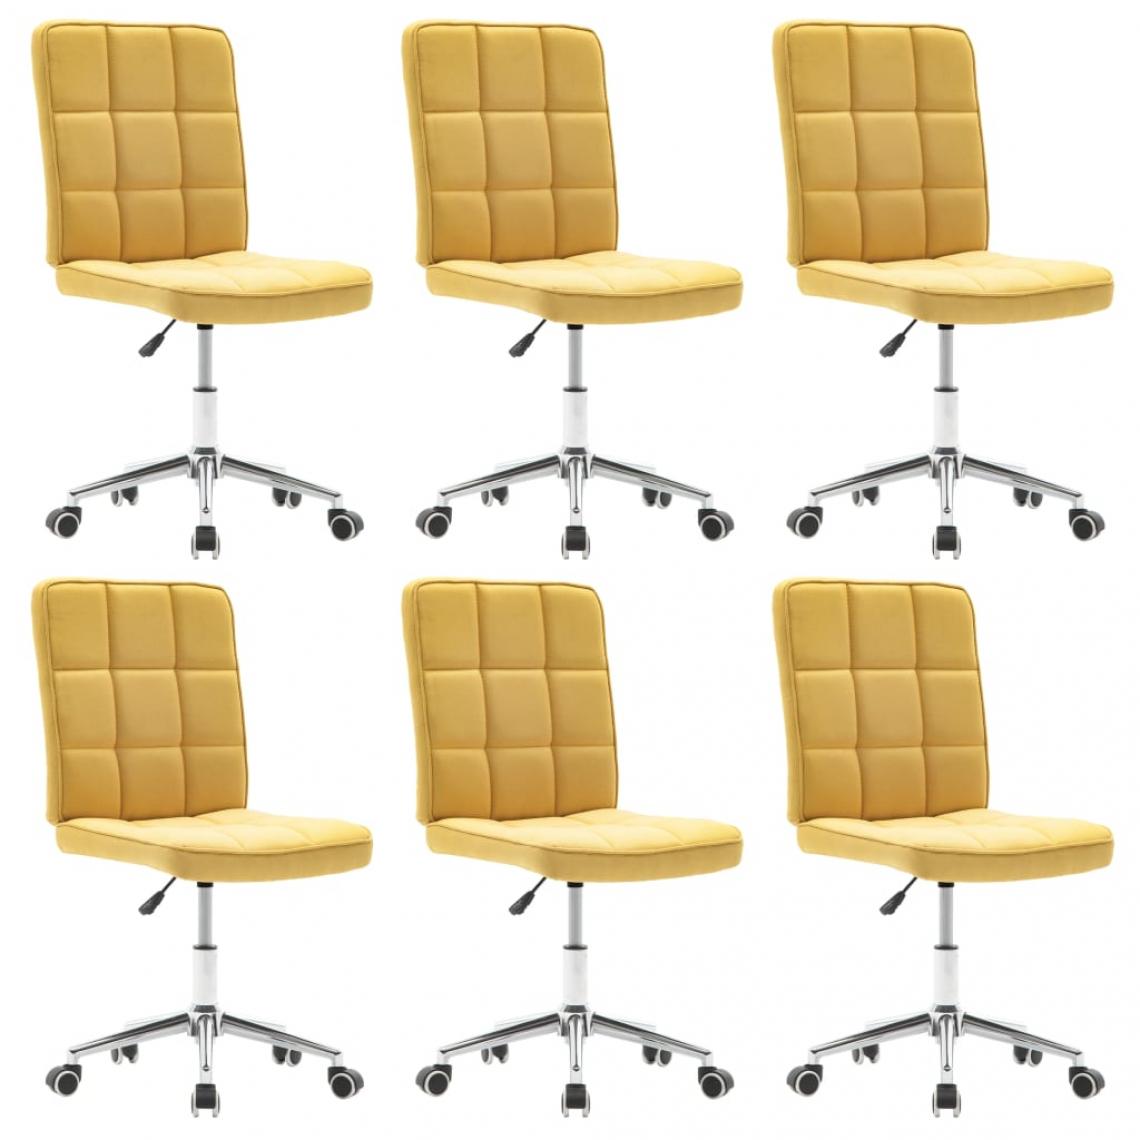 Decoshop26 - Lot de 6 chaises de salle à manger cuisine design moderne tissu jaune CDS022539 - Chaises